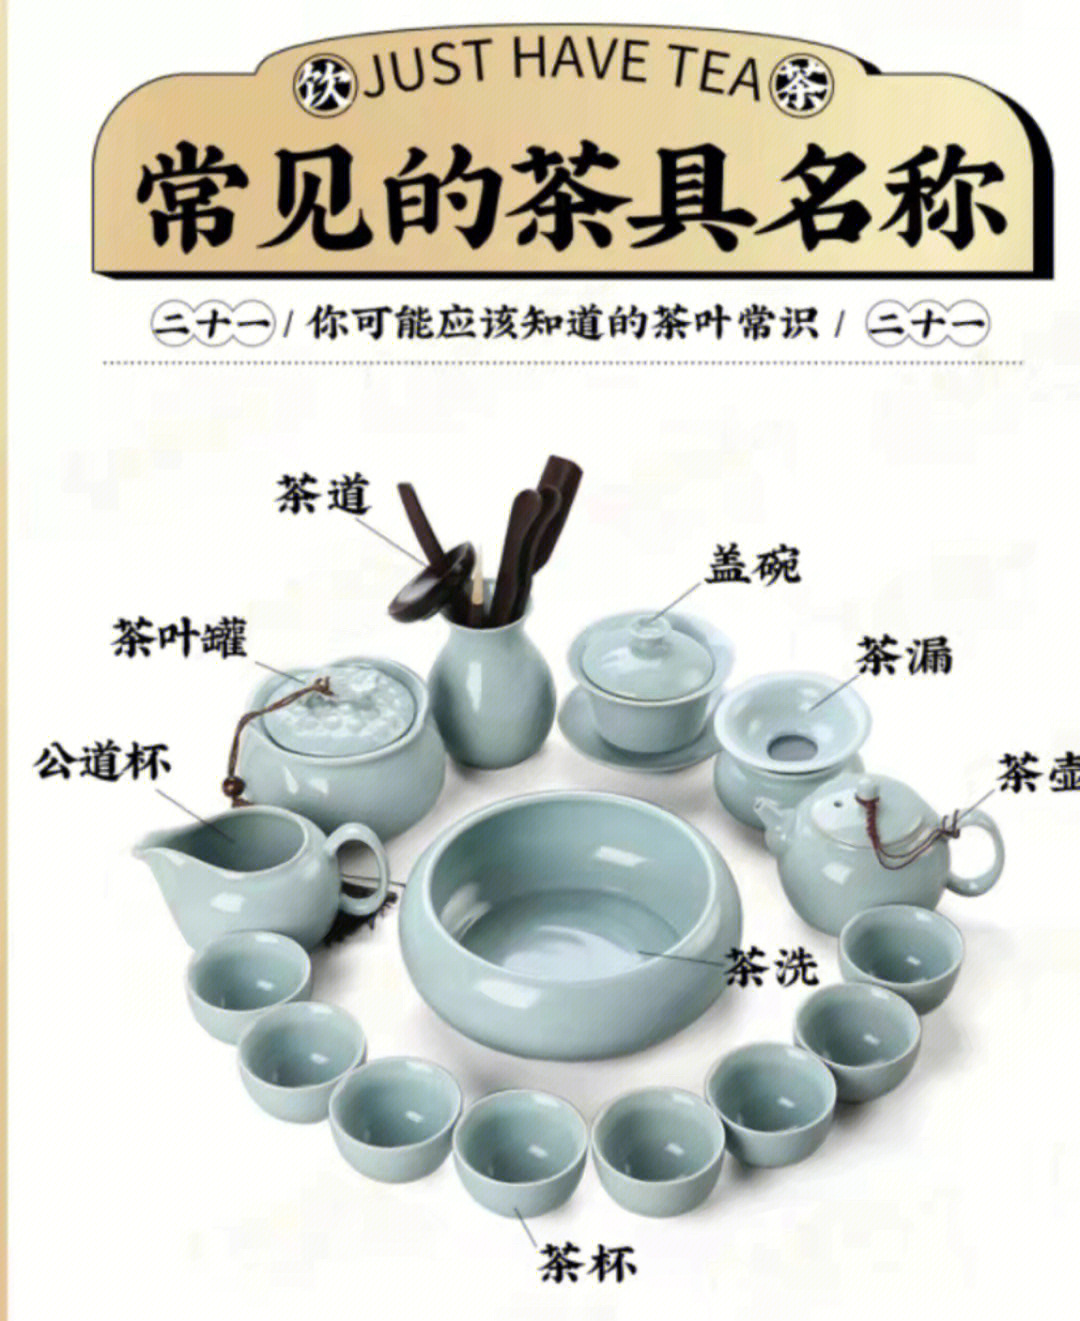 日本茶道器具介绍图图片